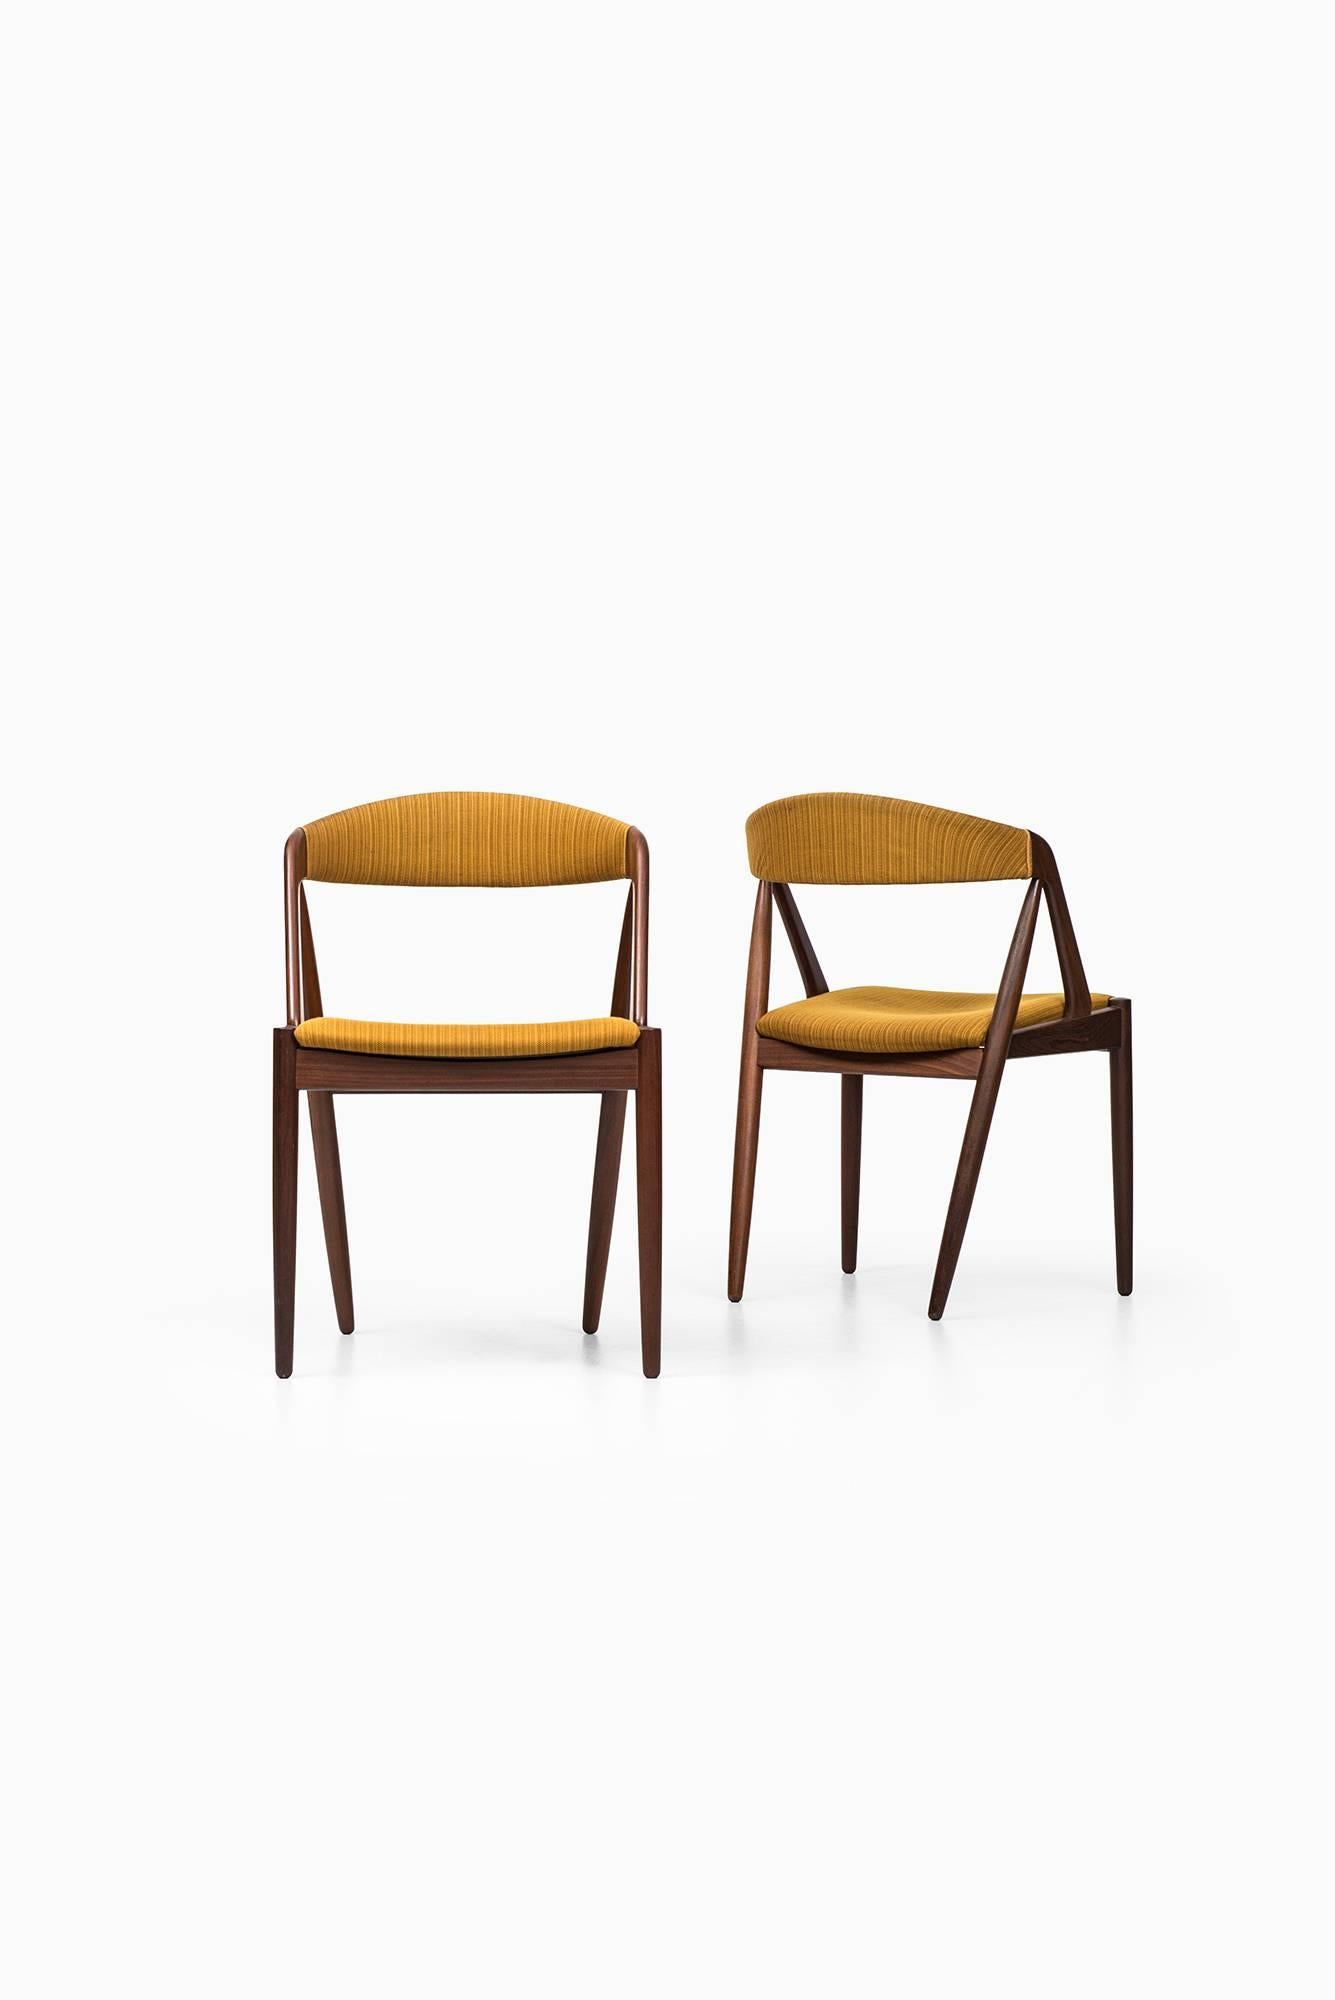 Kai Kristiansen Dining Chairs by Schou Andersen in Denmark 1